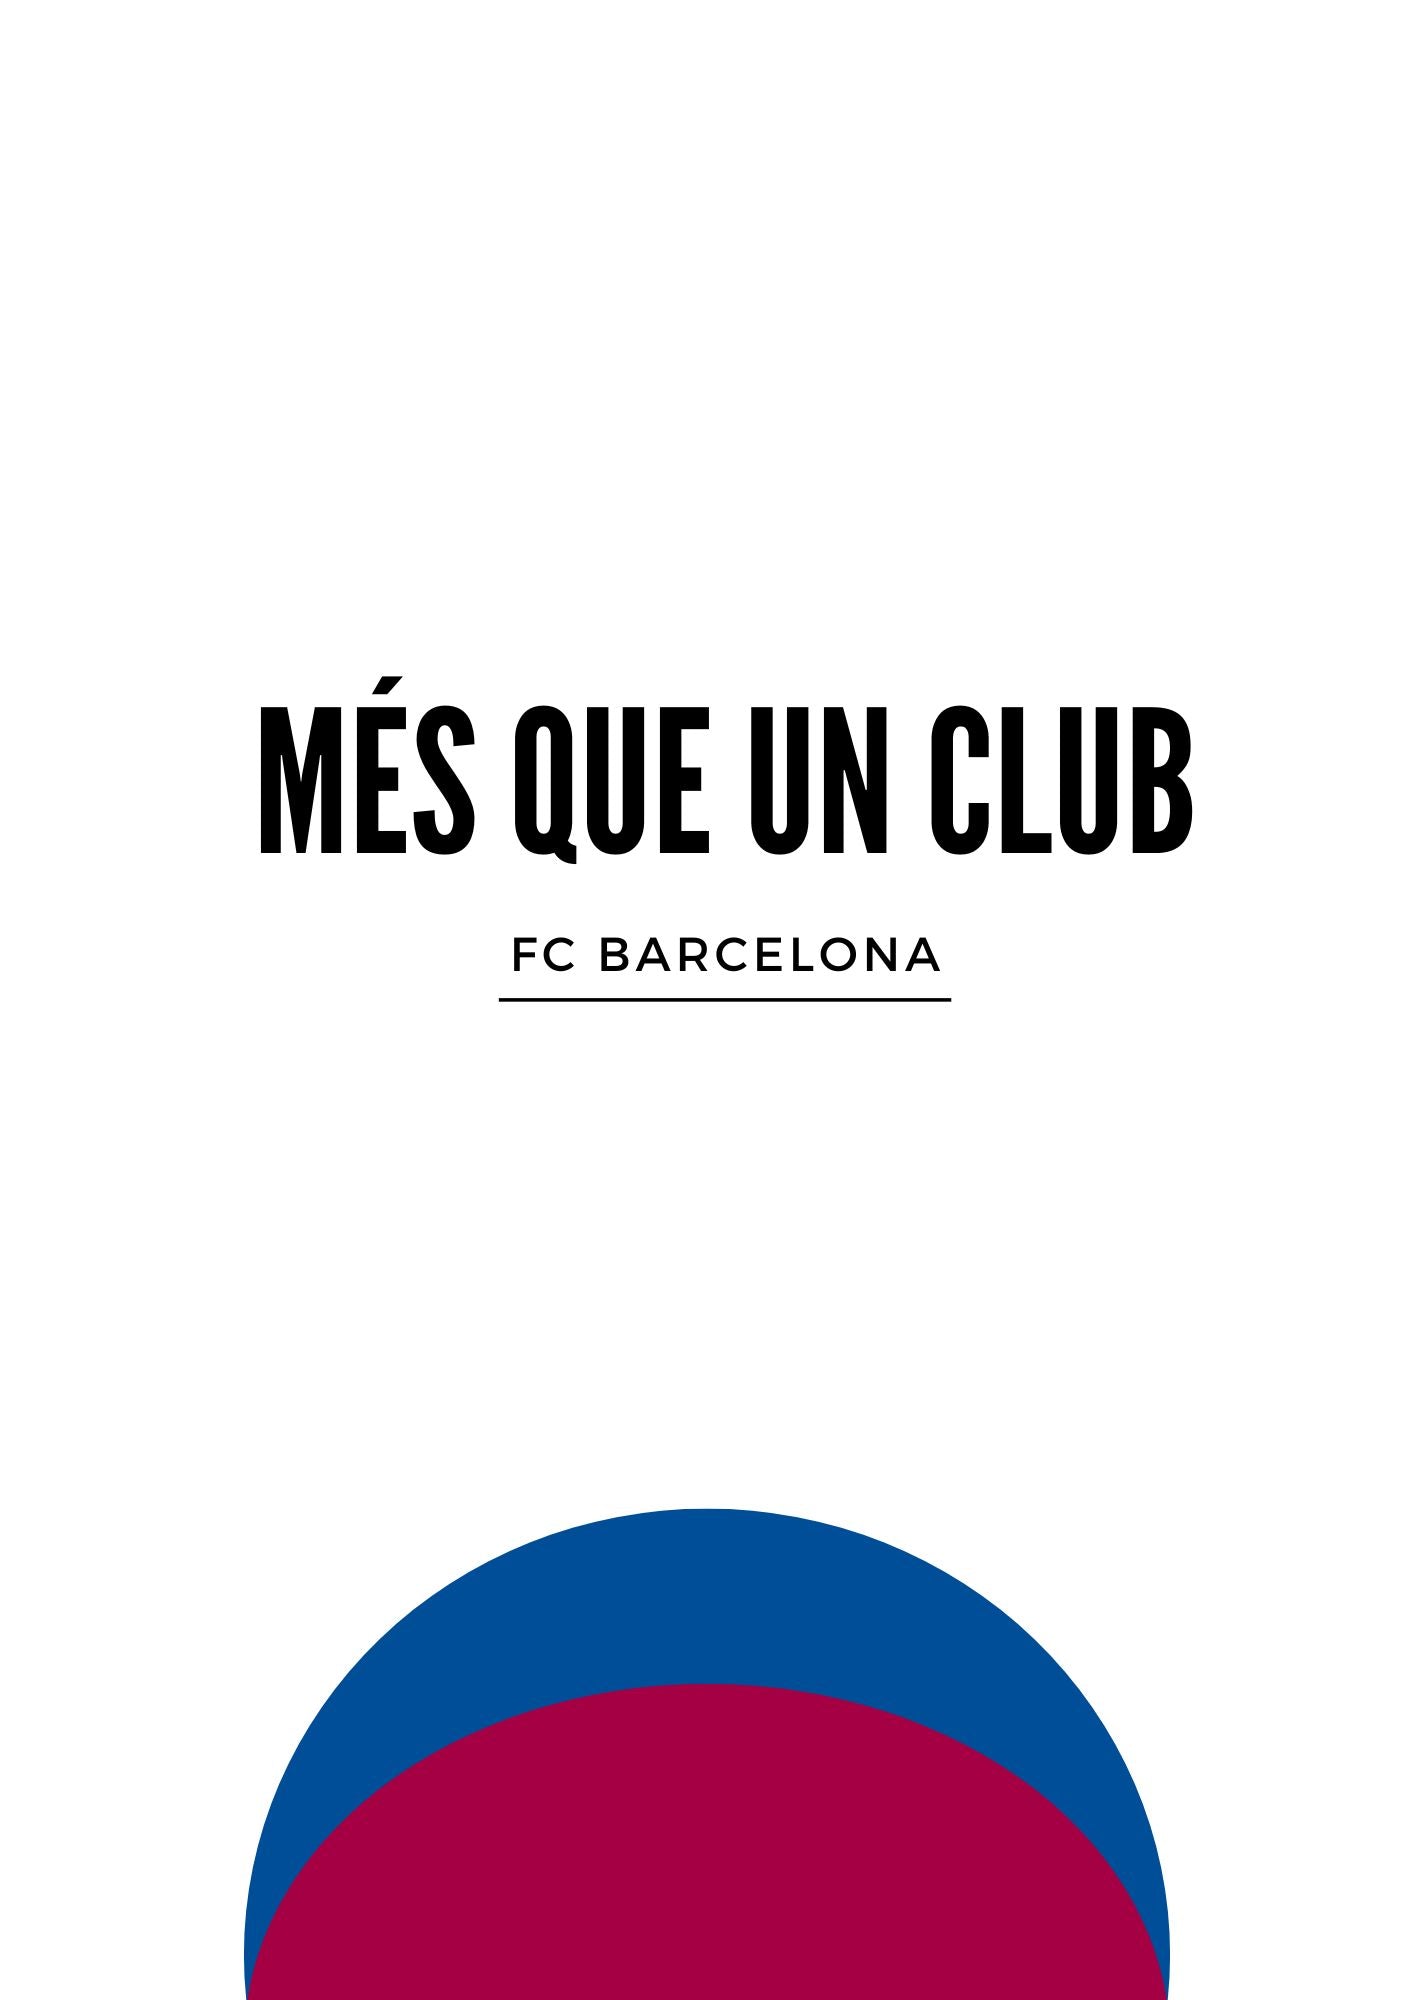 FC Barcelona Bluered Ball Poster